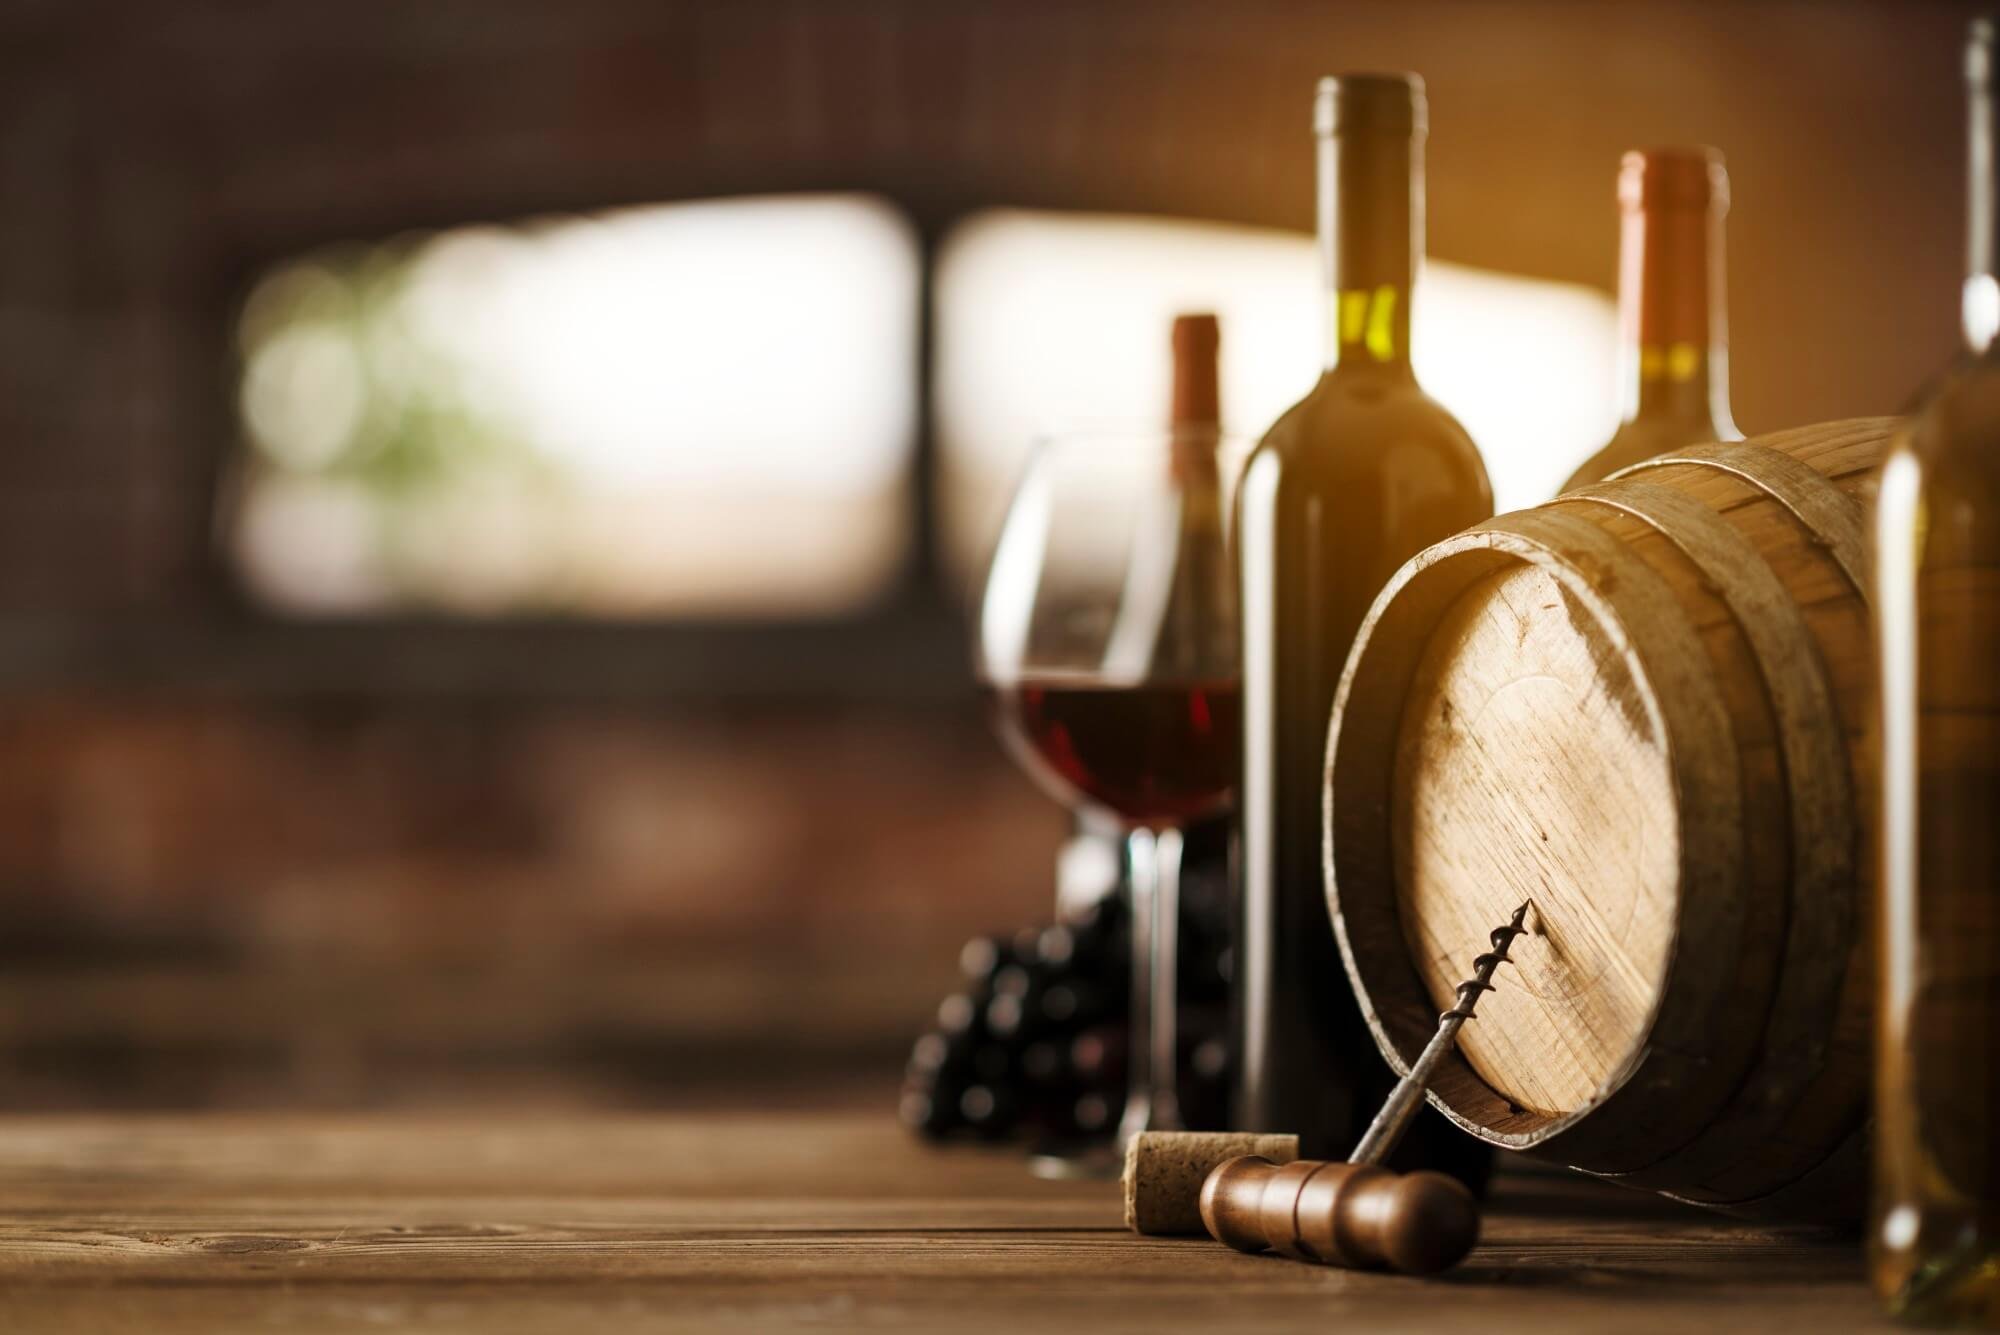 מה זה טרואר? וכיצד הוא משפיע על אפקט טעם היין